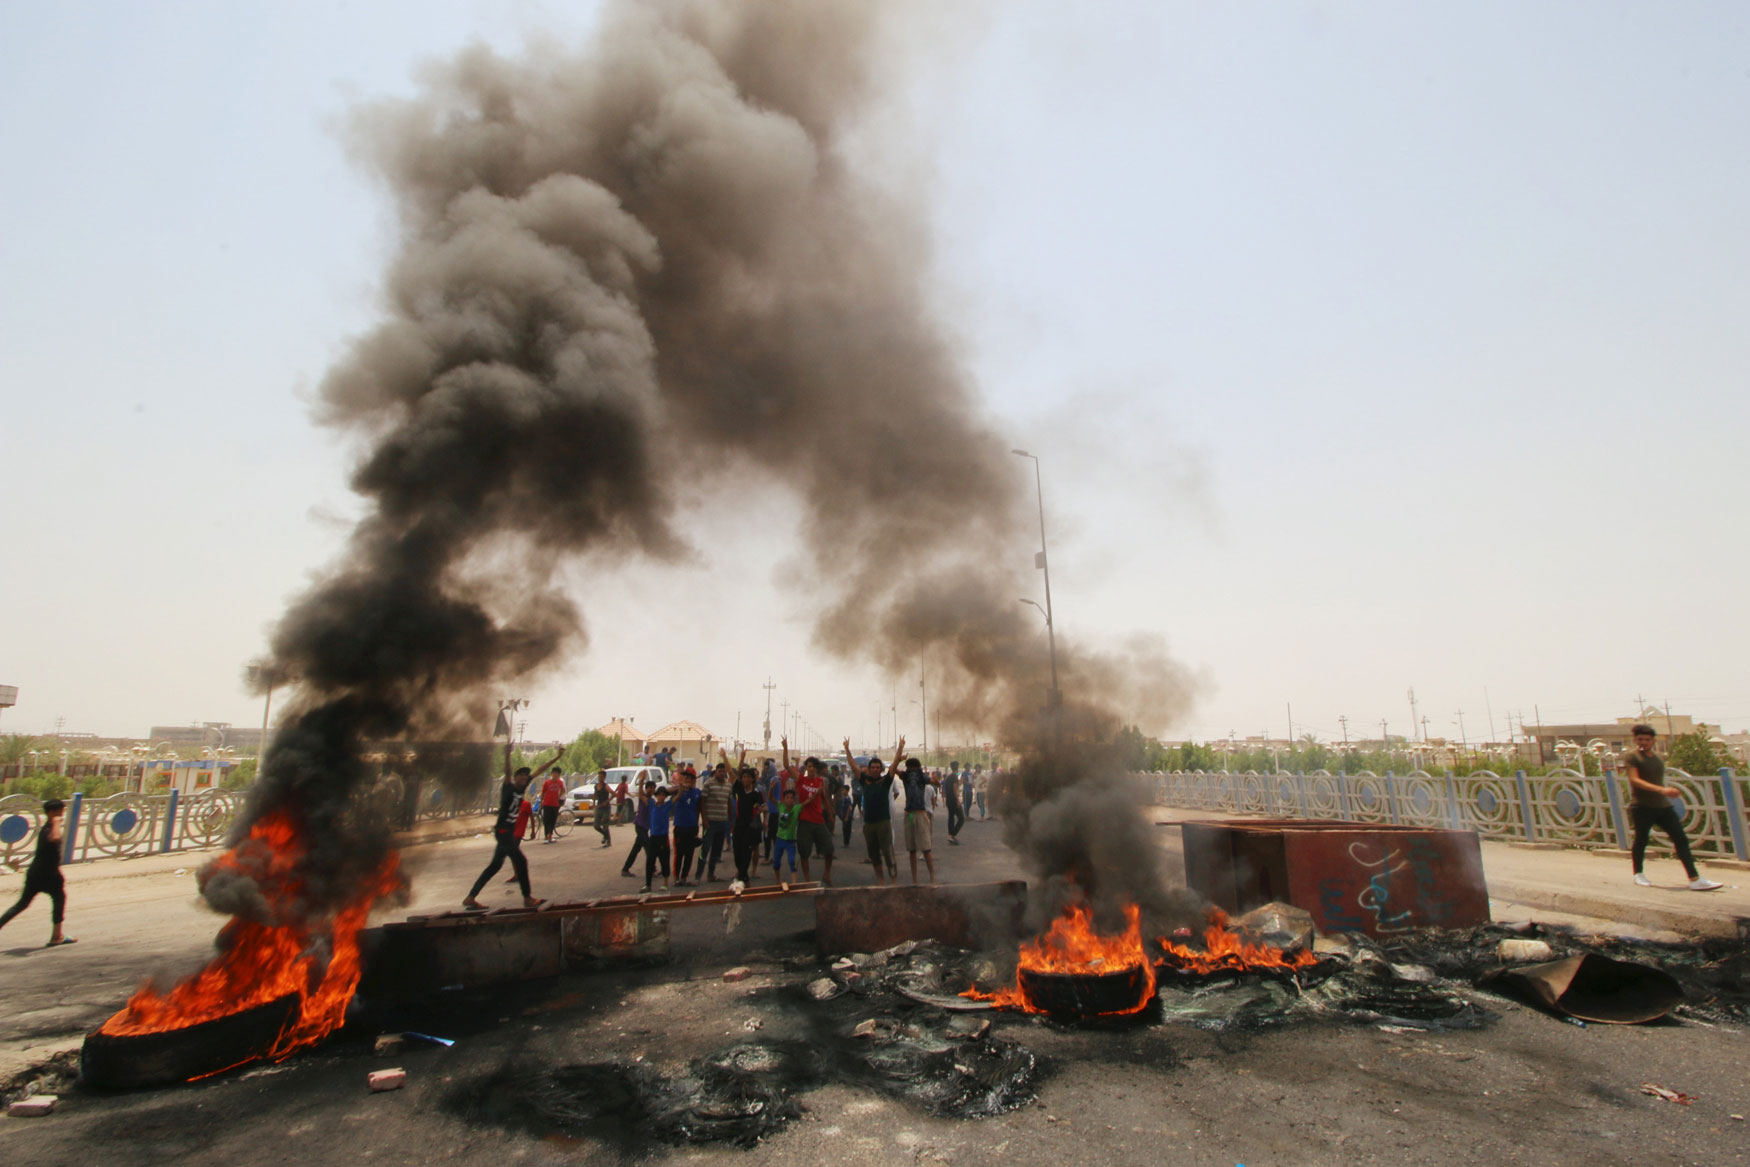 تصاعد الغضب الشعبي في جنوب العراق يربك الحكومة العراقية